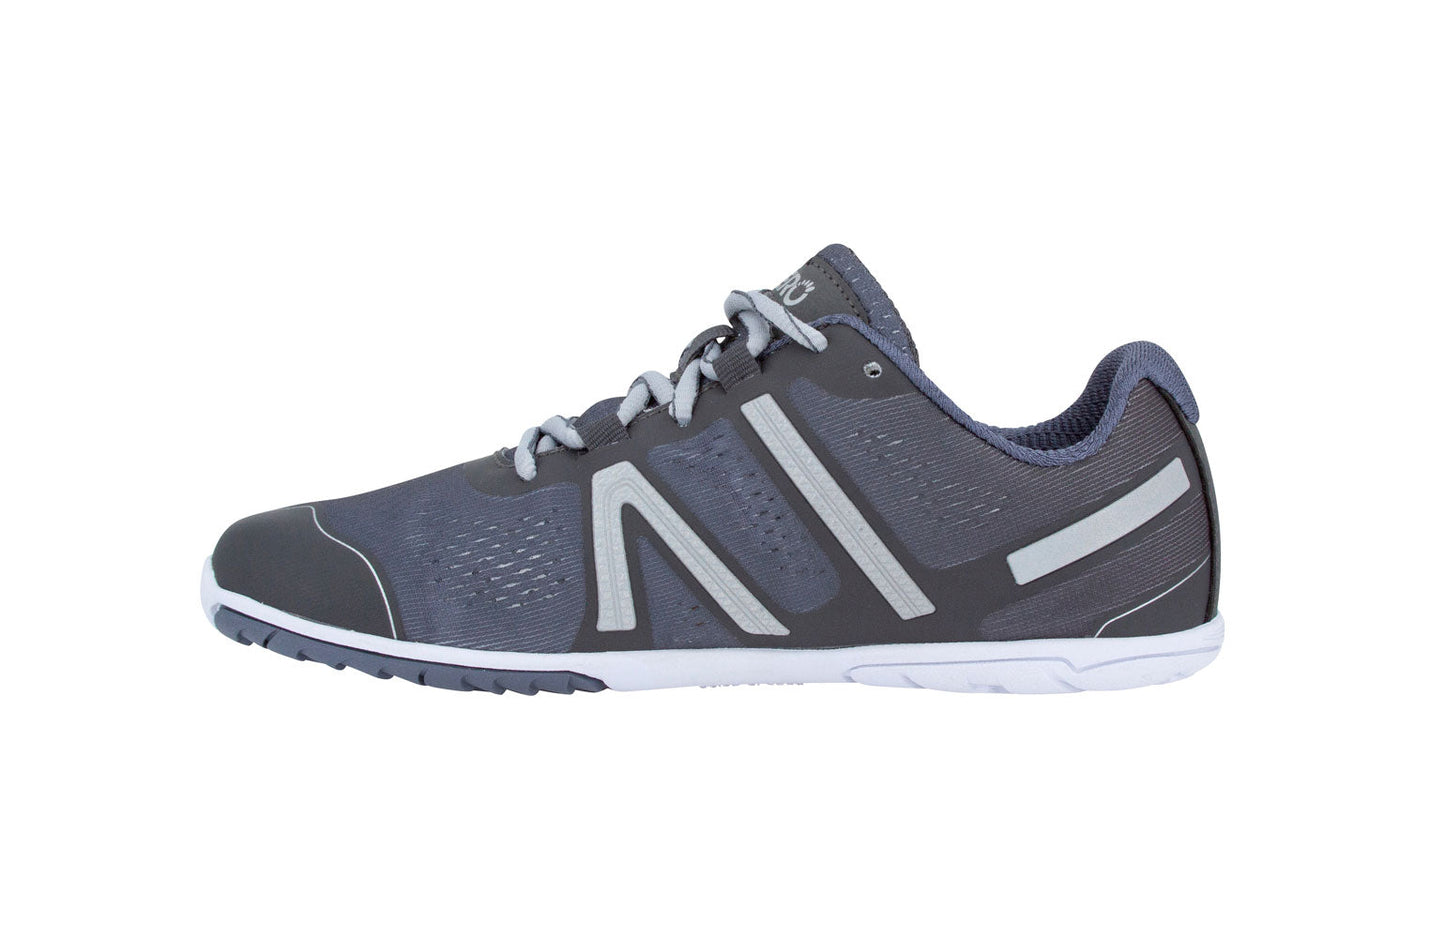 Xero Shoes HFS Womens barfods træningssko/løbesko til kvinder i farven steel gray, inderside